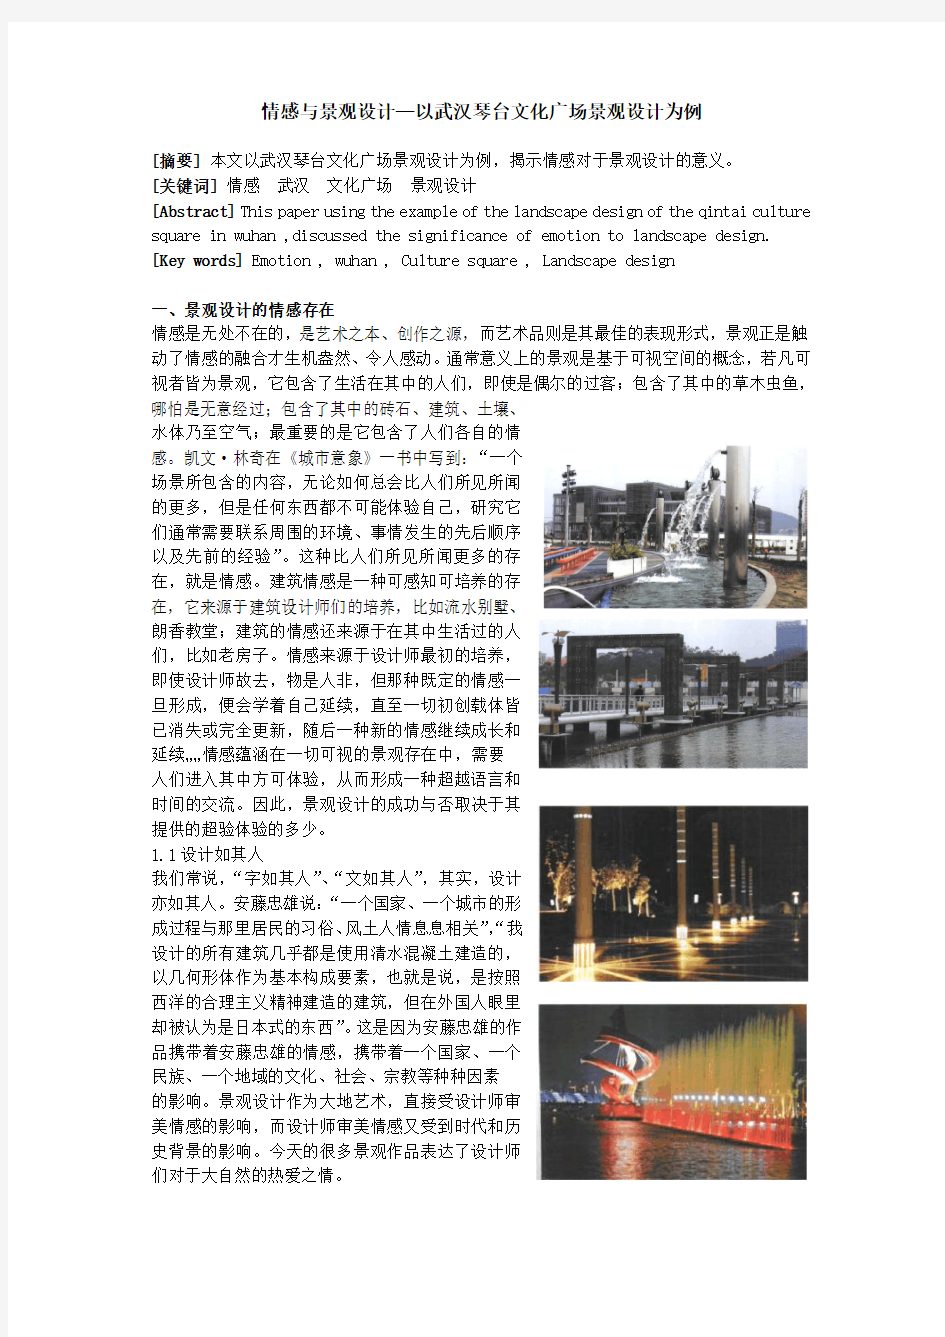 情感与景观设计—以武汉琴台文化广场景观设计为例